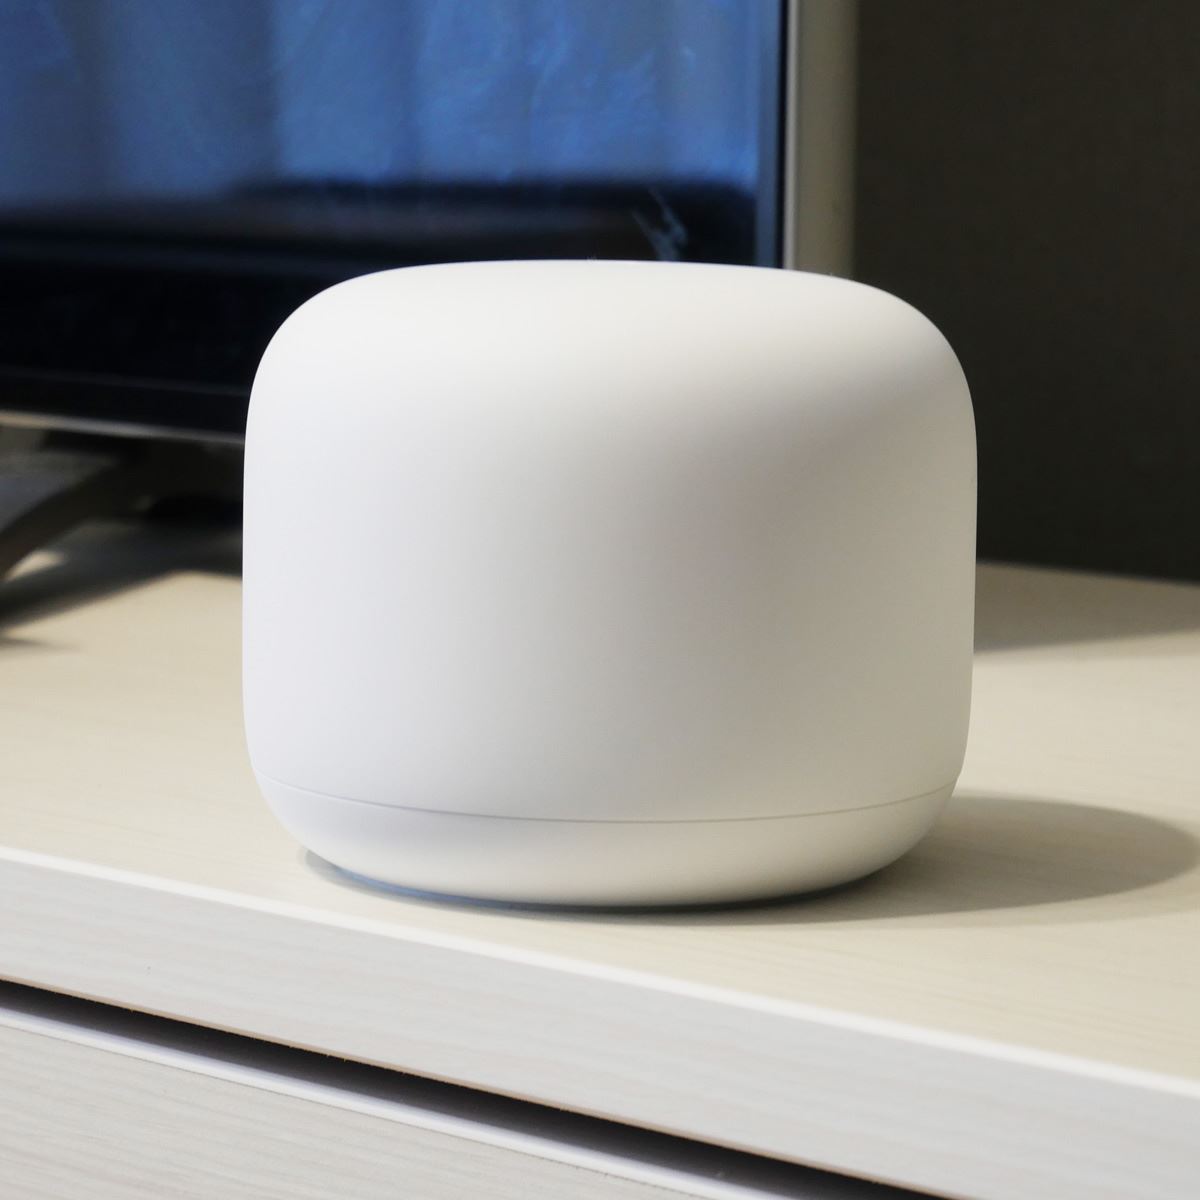 無線LANルーター「Google Nest WiFi」レビュー。メッシュネットワーク 